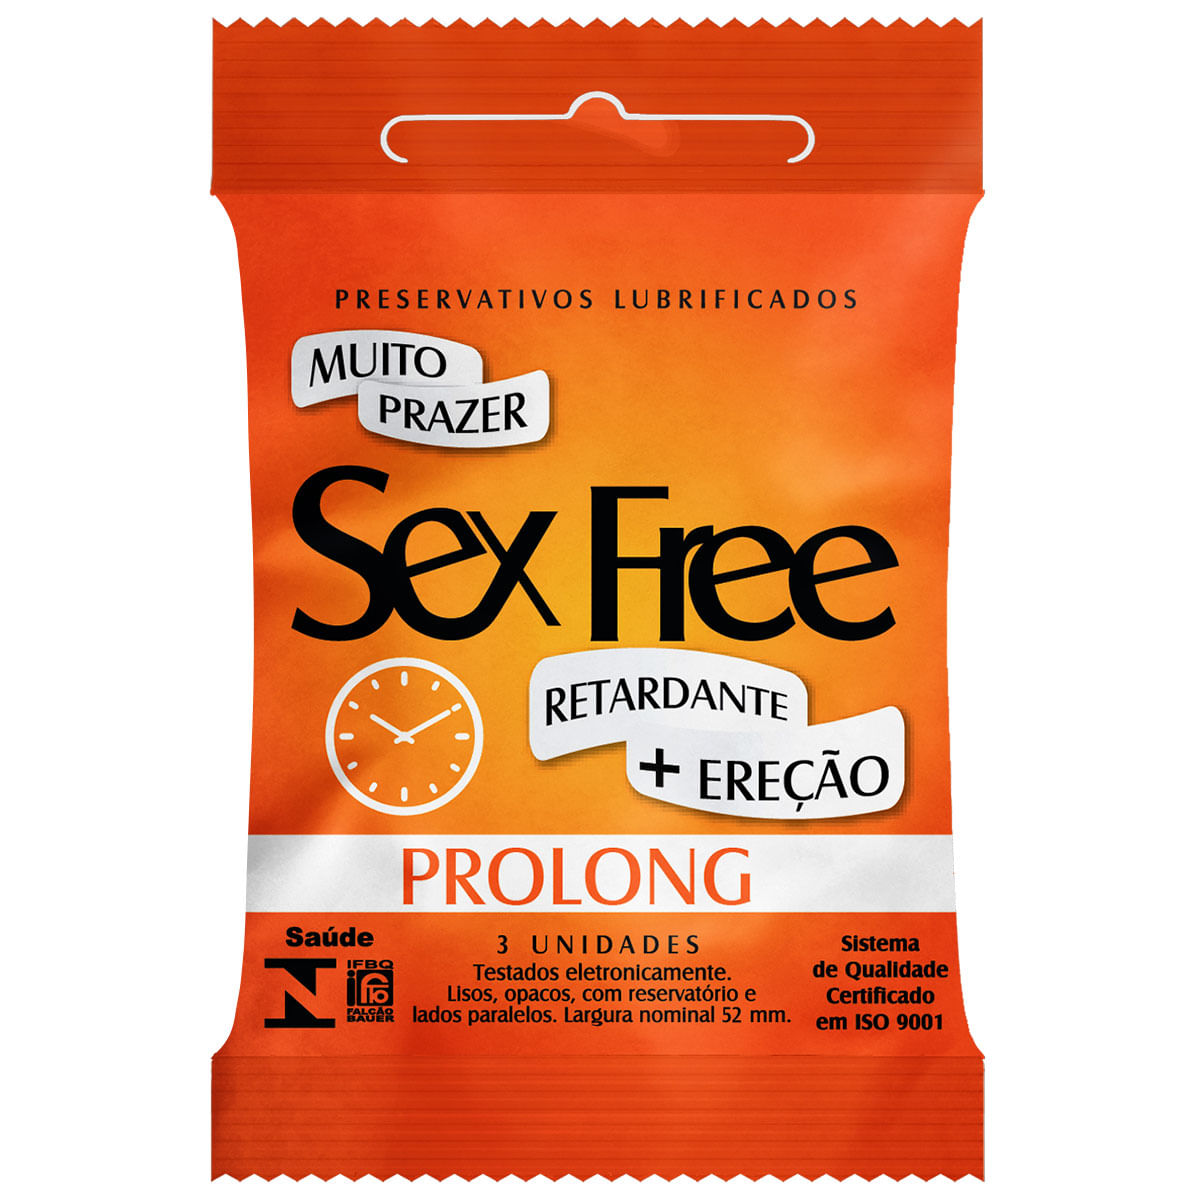 Preservativos Lubrificados Prolong com 3 unidades Sex Free